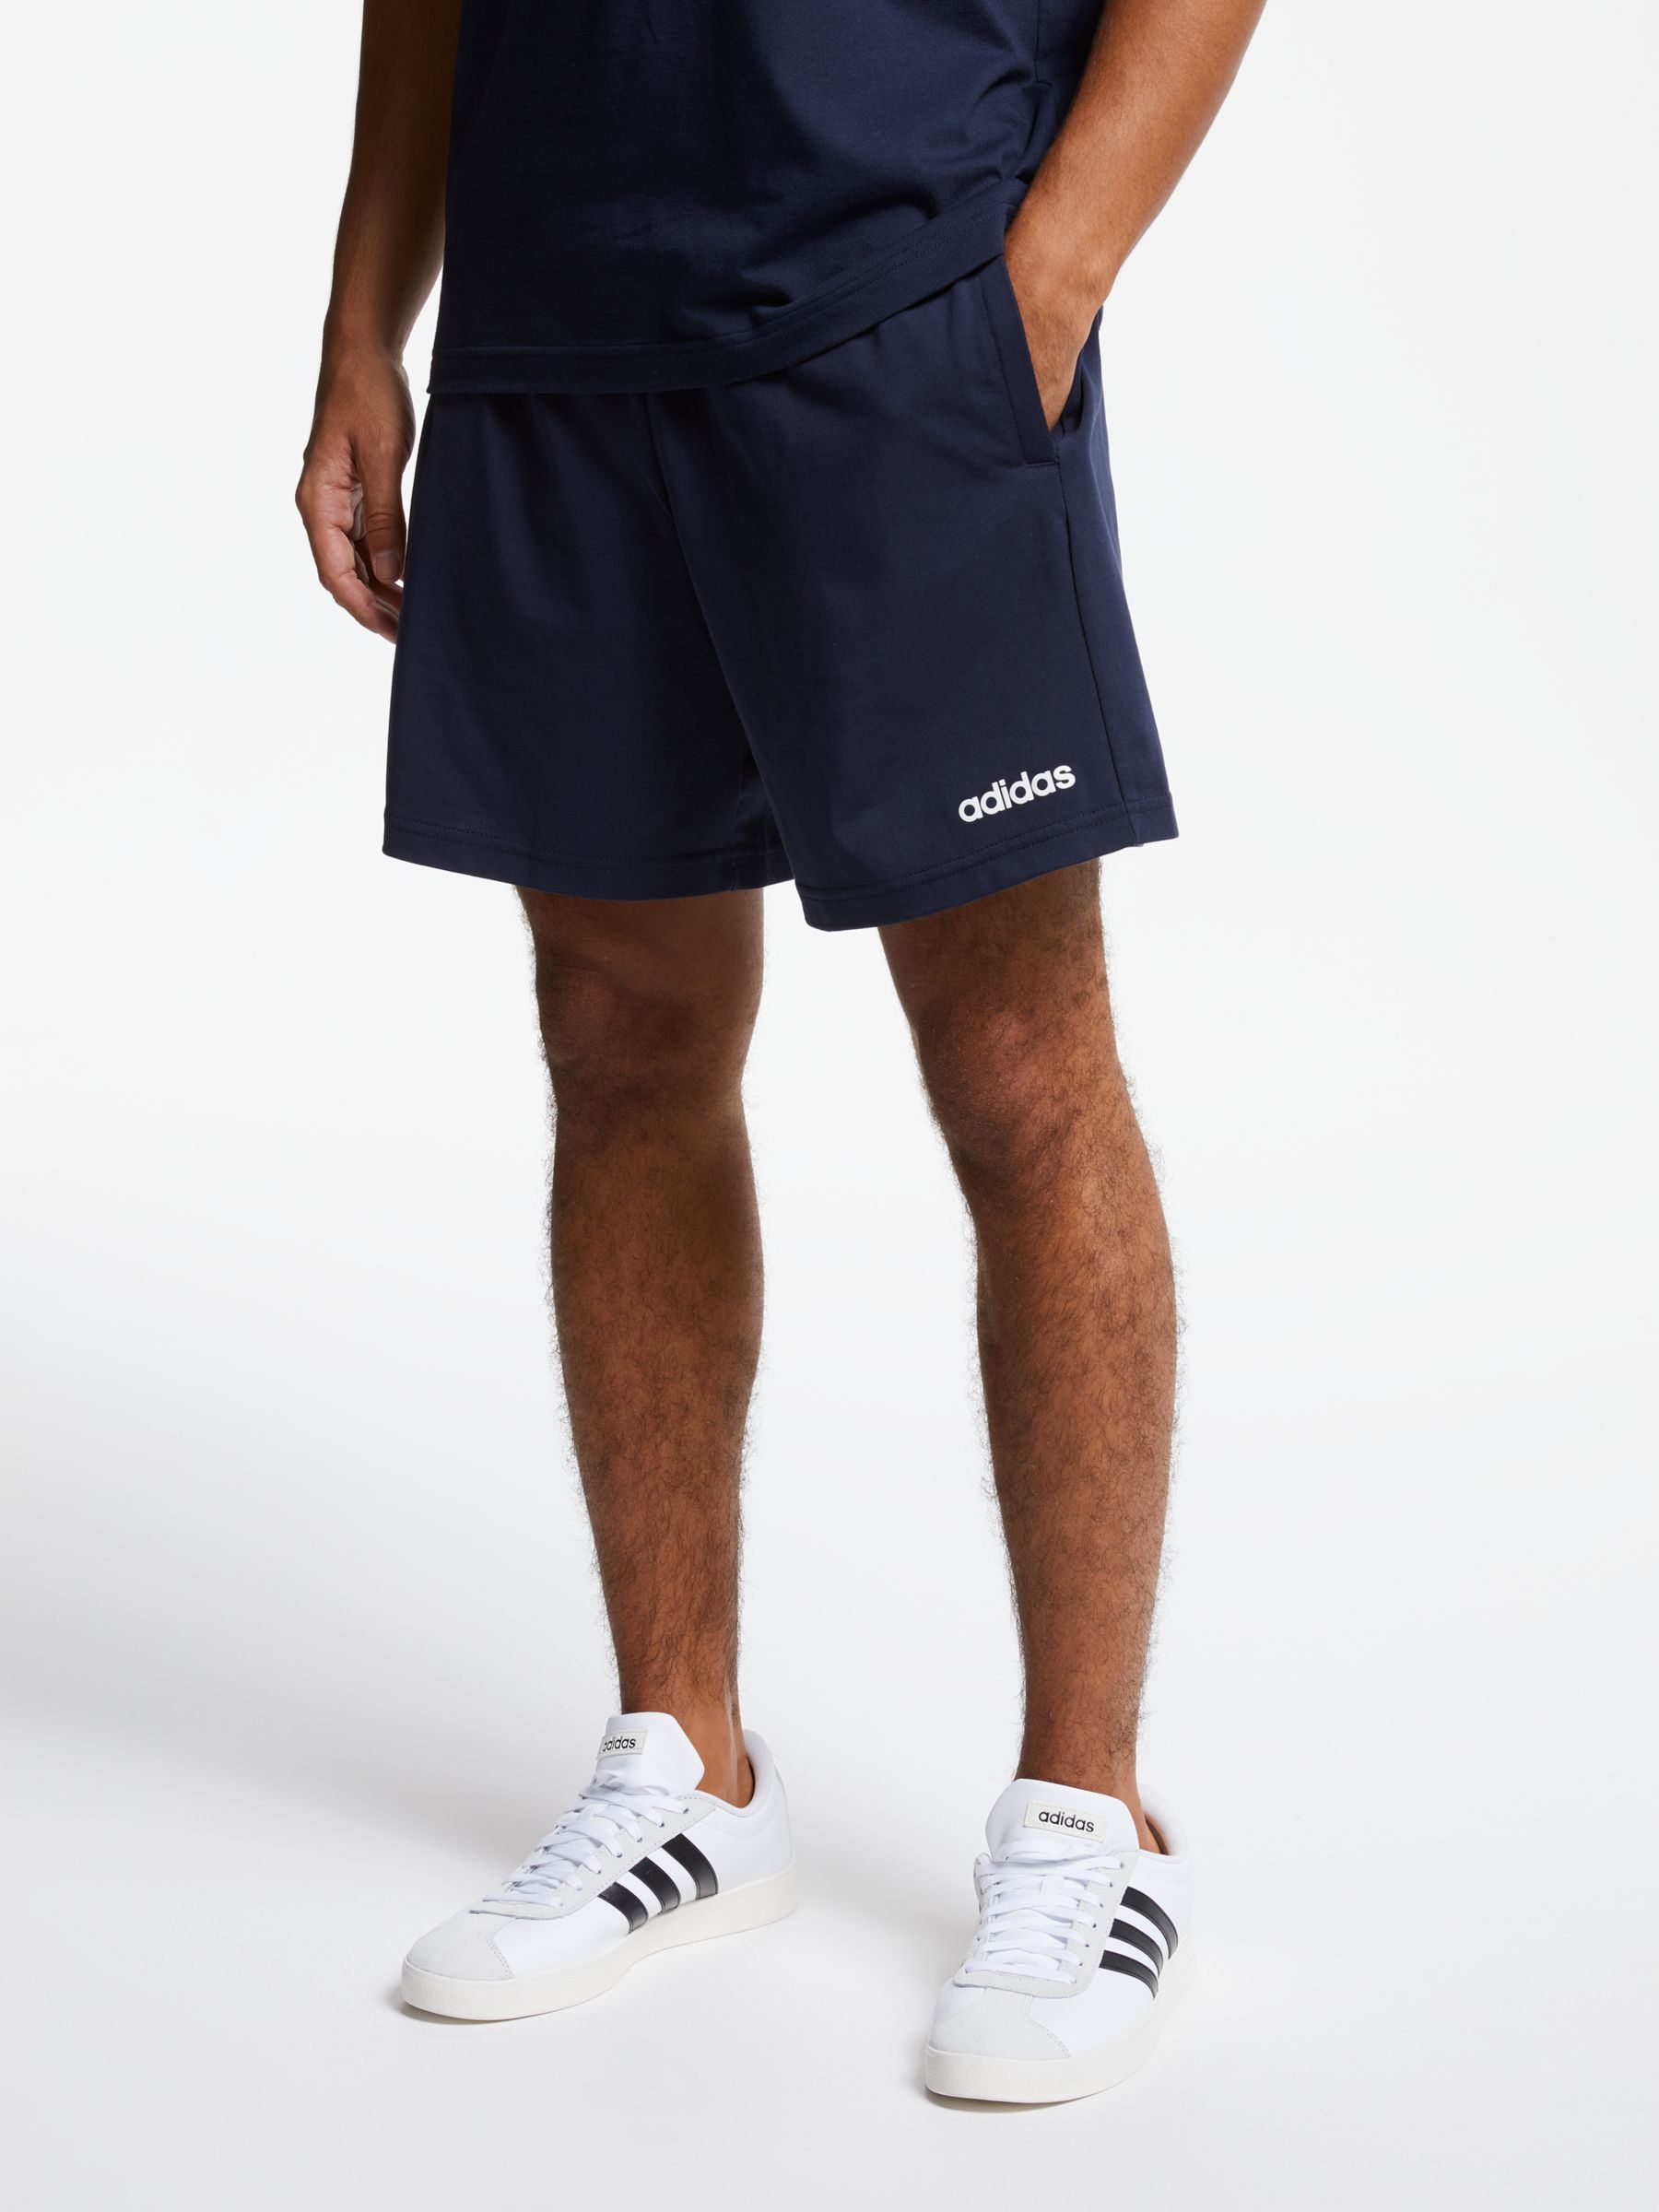 mens adidas jersey shorts